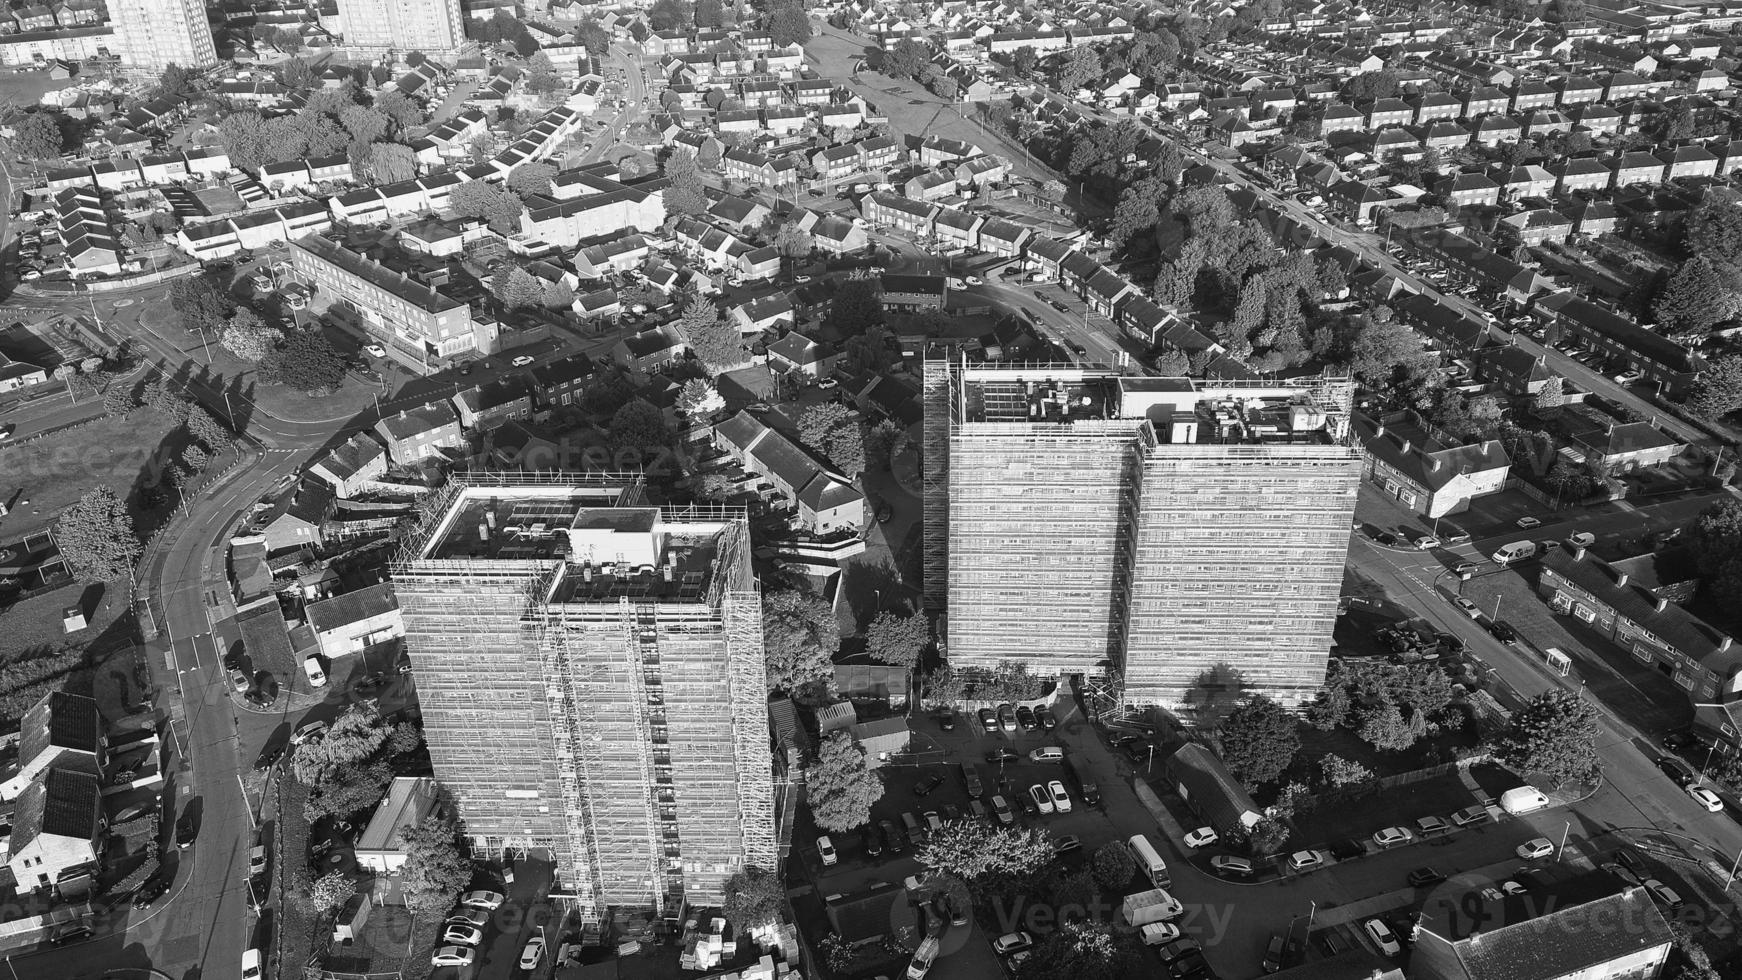 vista aérea clásica en blanco y negro de gran ángulo del paisaje urbano de inglaterra gran bretaña foto